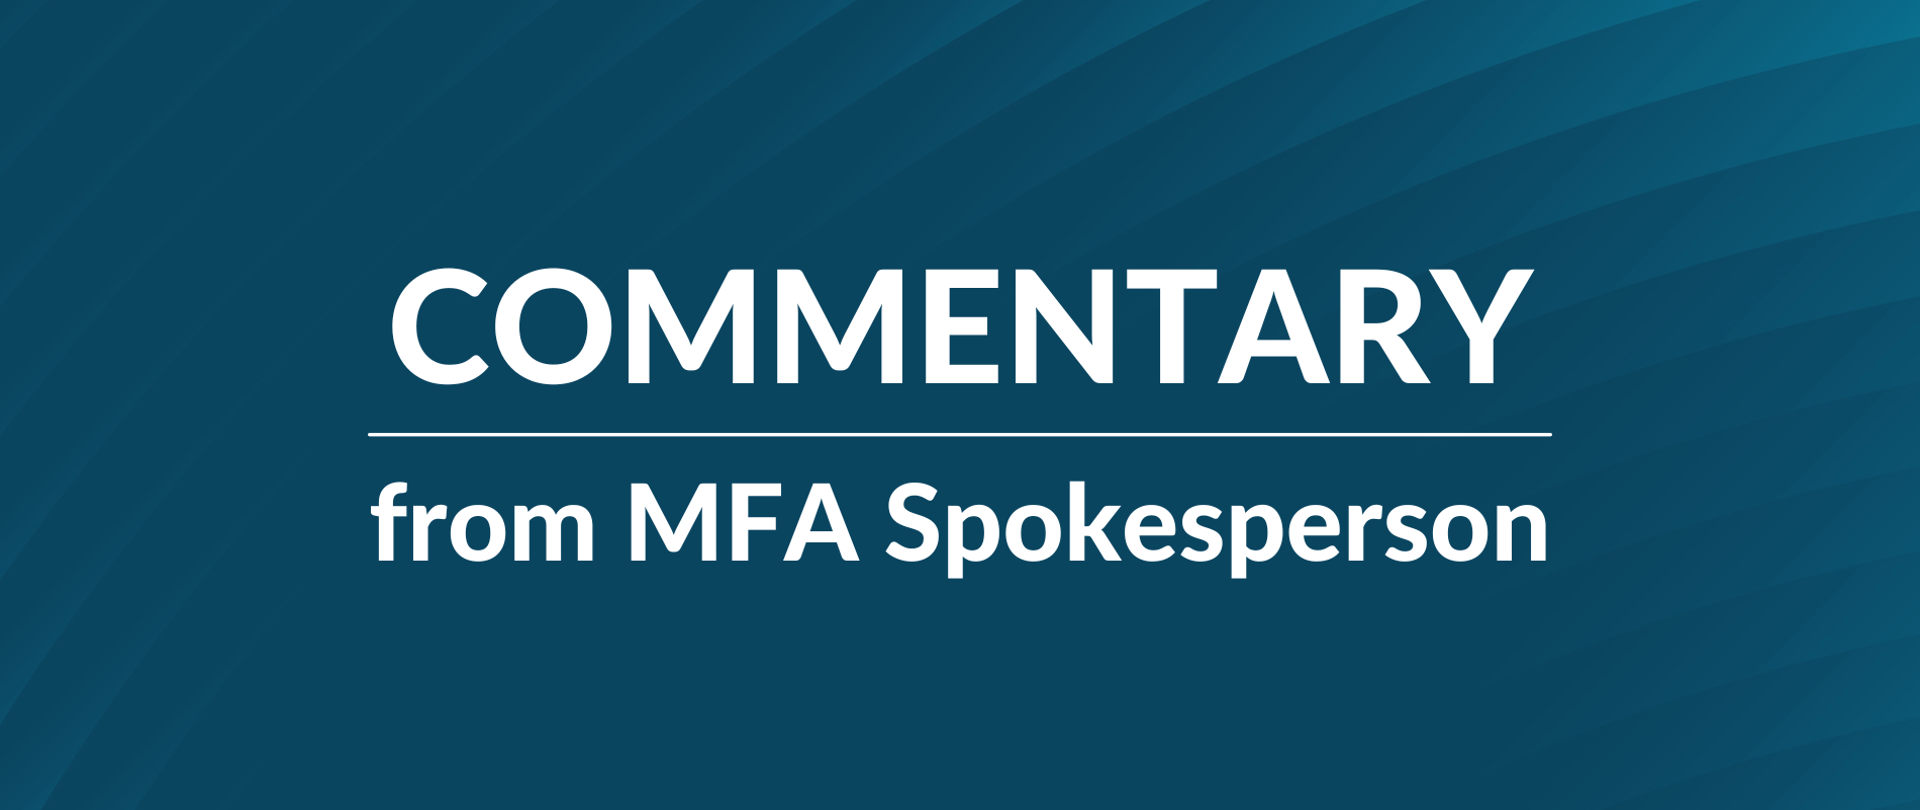 MFA Spokesperson's commentary